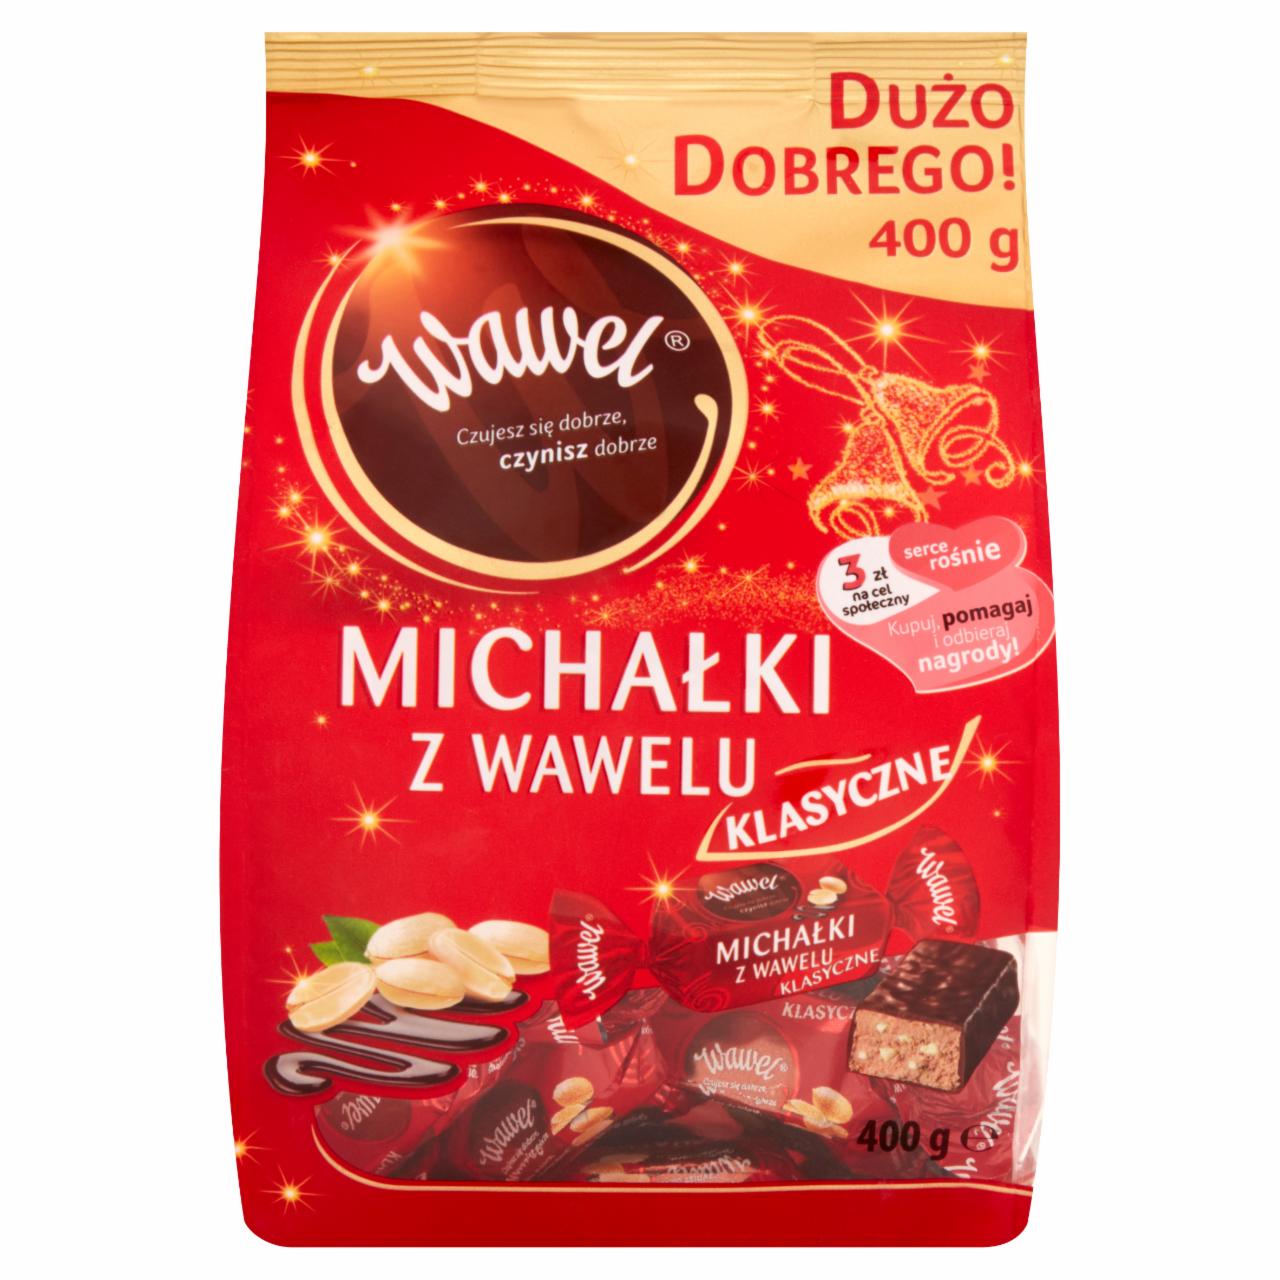 Zdjęcia - Wawel Michałki z Wawelu Klasyczne Cukierki w czekoladzie 400 g